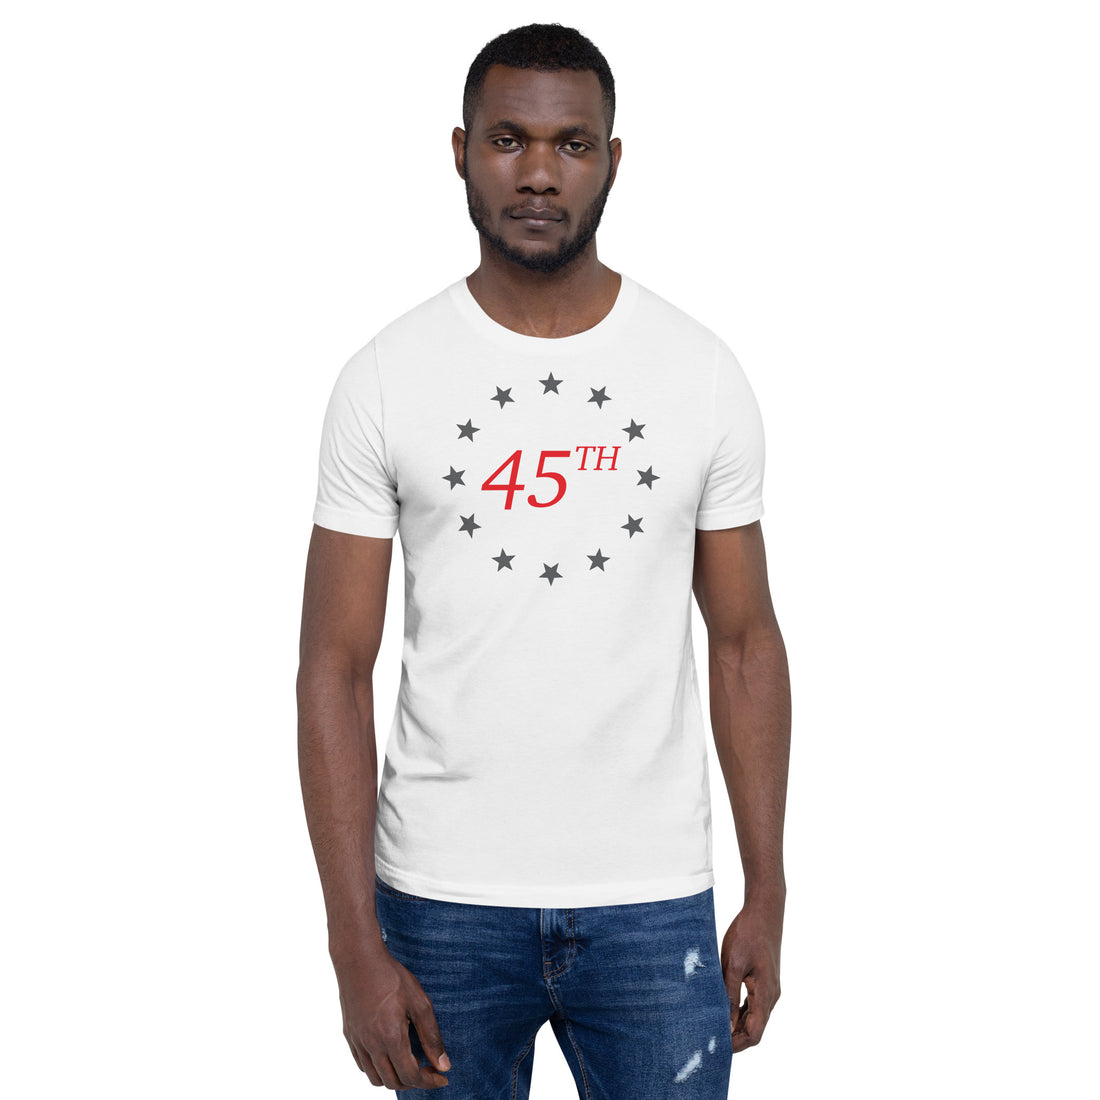 45th t-shirt